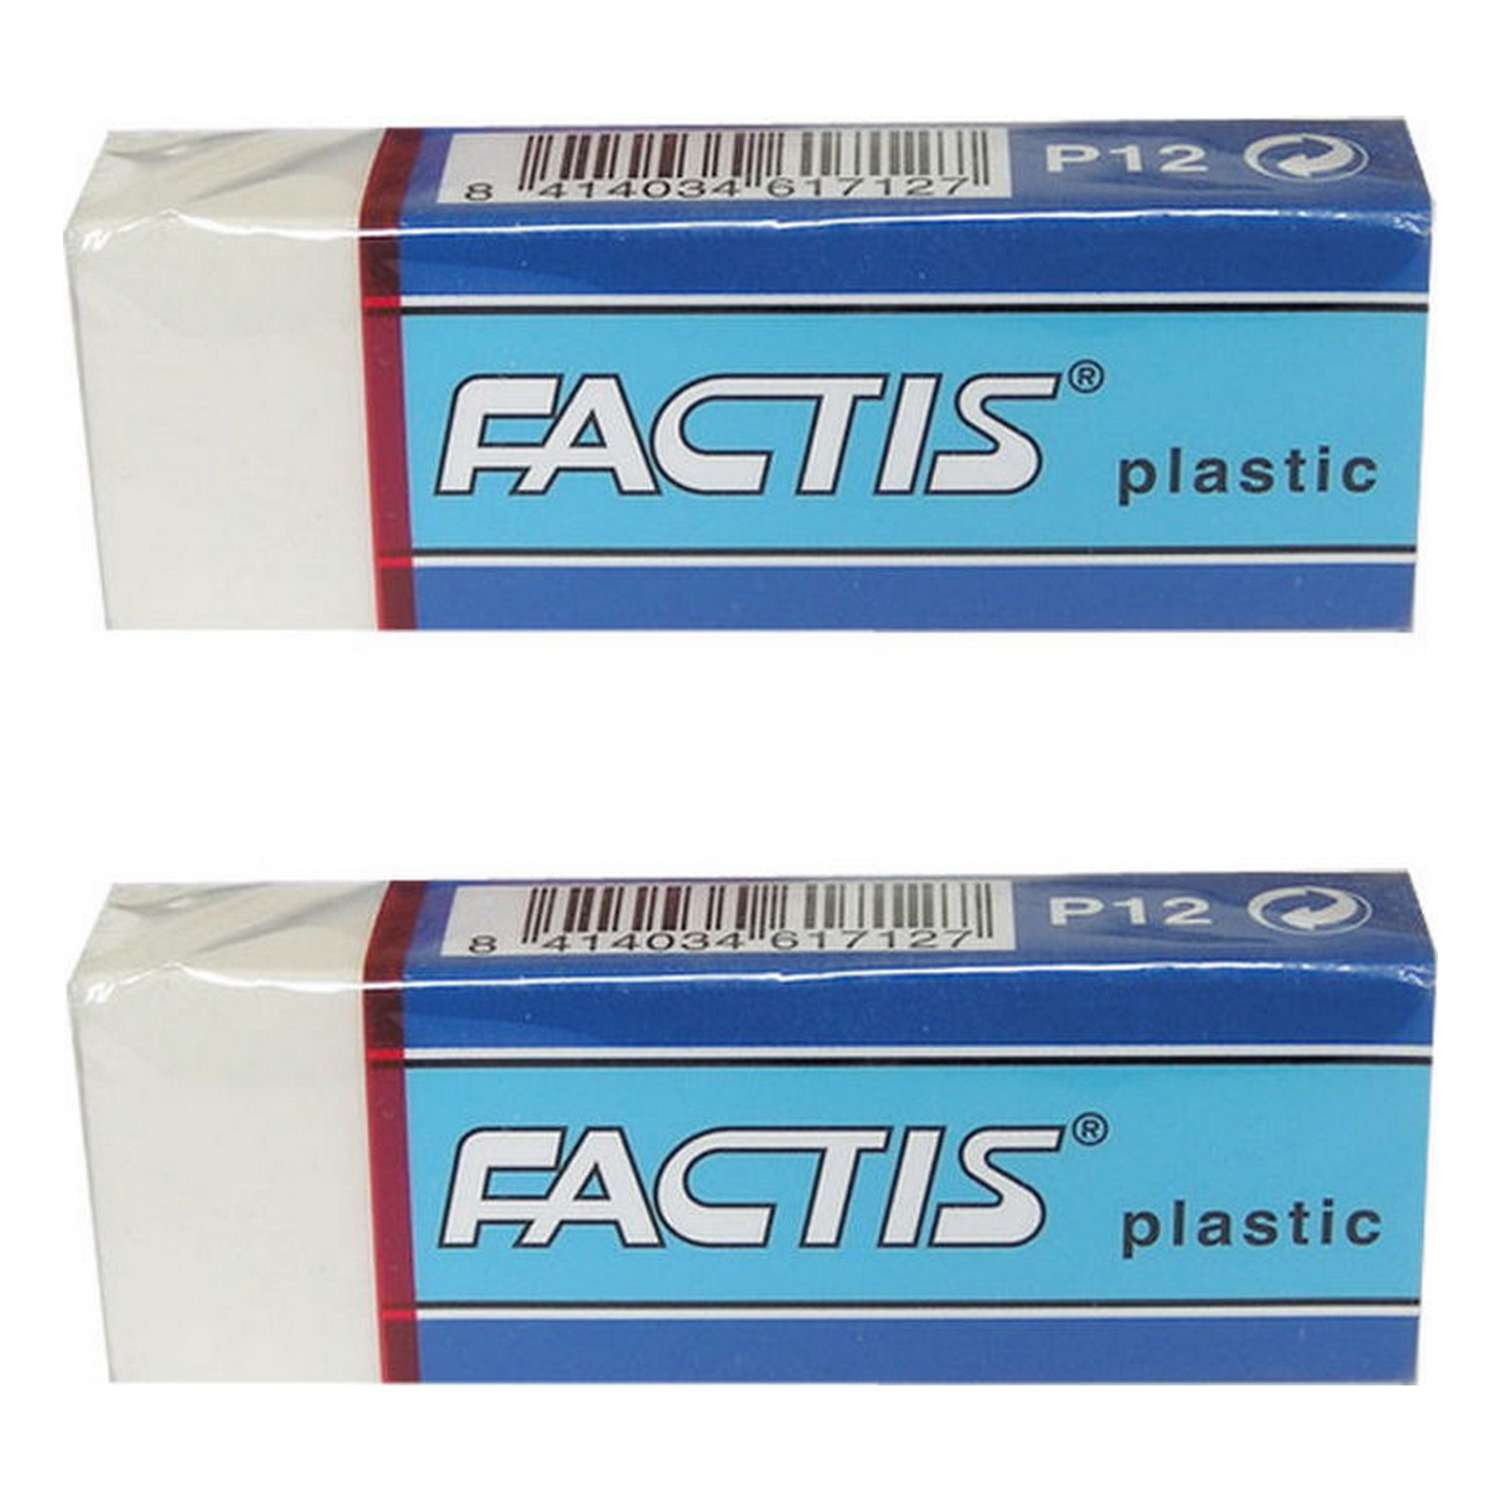 Ластик FACTIS Plastic P 12 белый прямоугольный мягкий ПВХ 2шт P12/2SET - фото 1